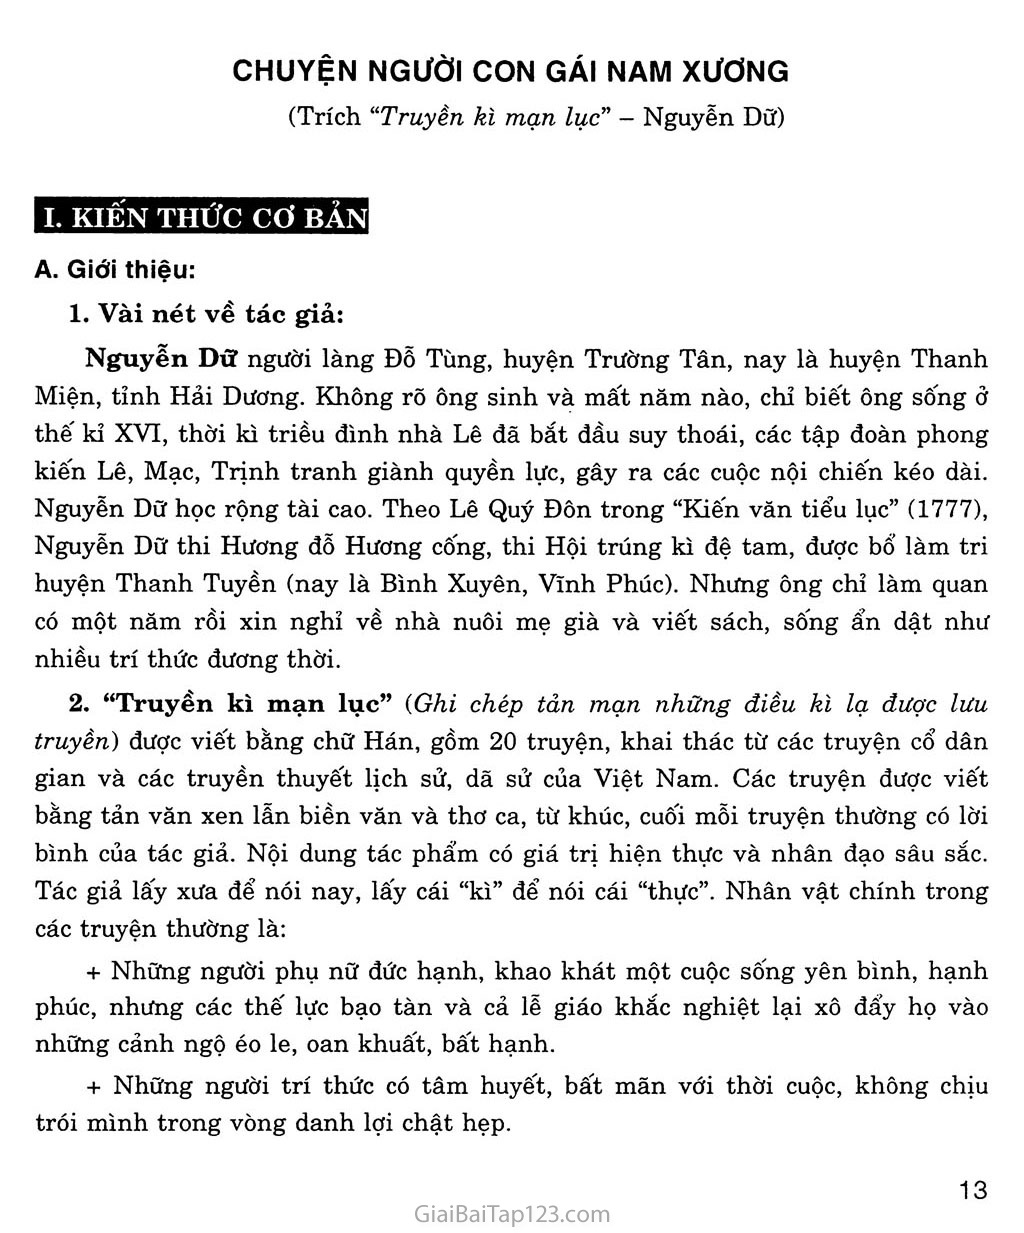 Chuyện người con gái Nam Xương (trích Truyền kì mạn lục) trang 1